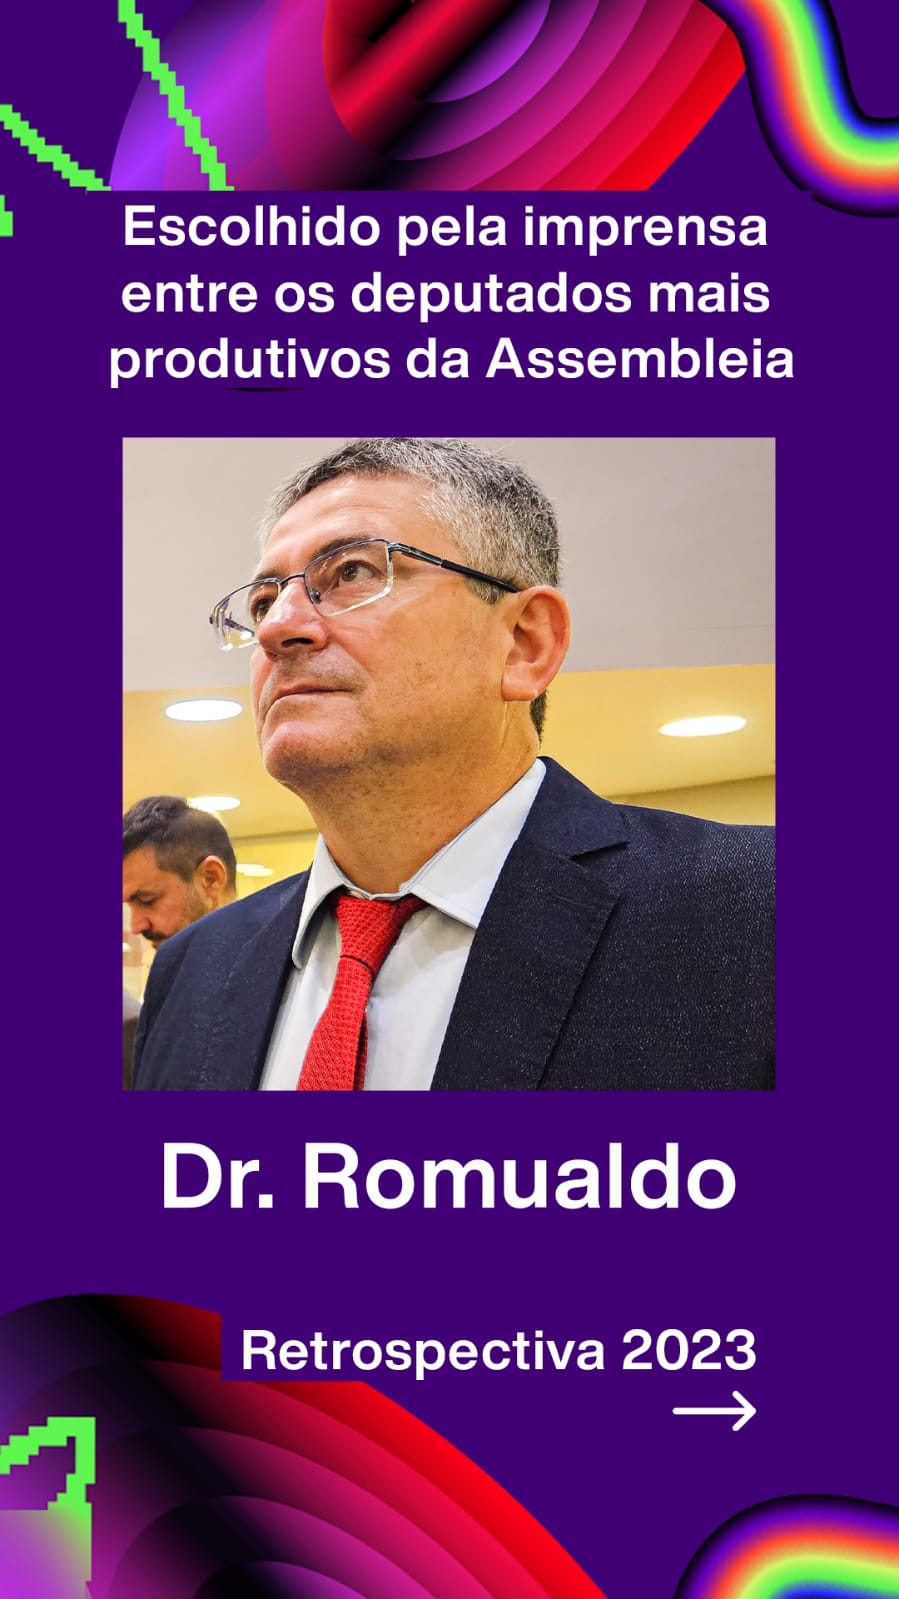 WhatsApp-Image-2023-12-01-at-09.10.38 Mandato de destaque: Dr. Romualdo é escolhido um dos deputados mais produtivos da Assembleia neste ano